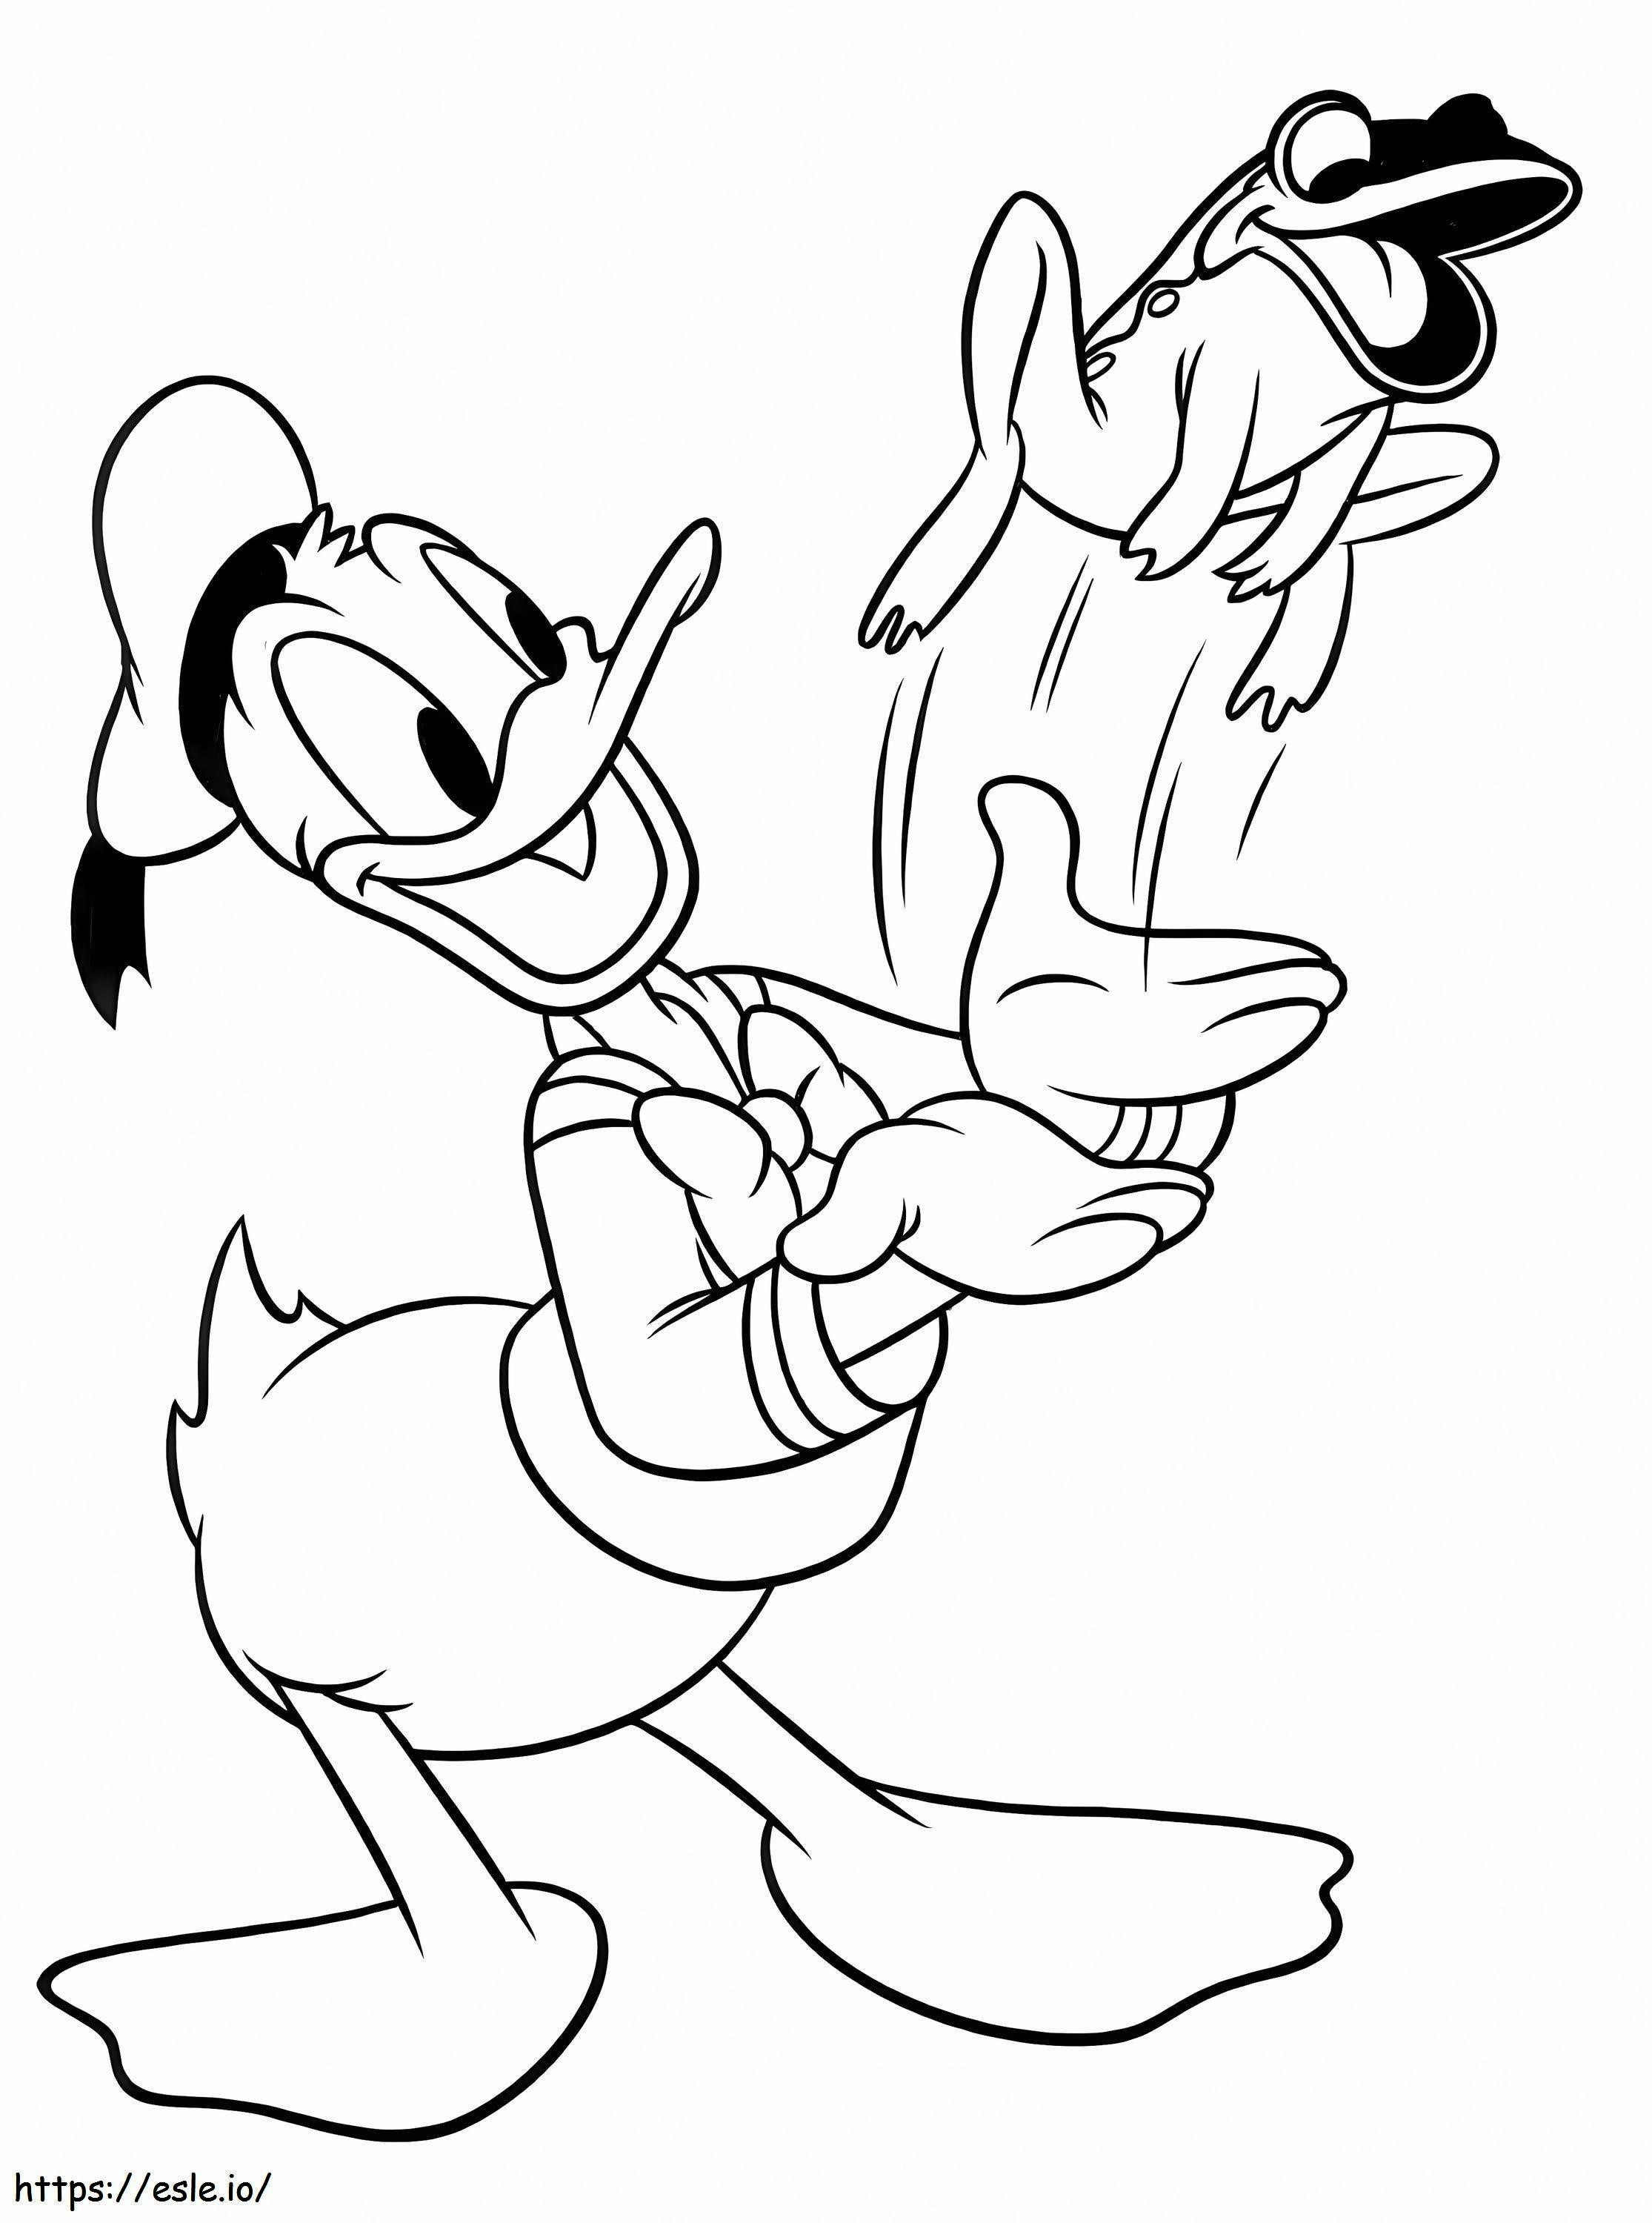 Donald Duck mit einem Frosch ausmalbilder